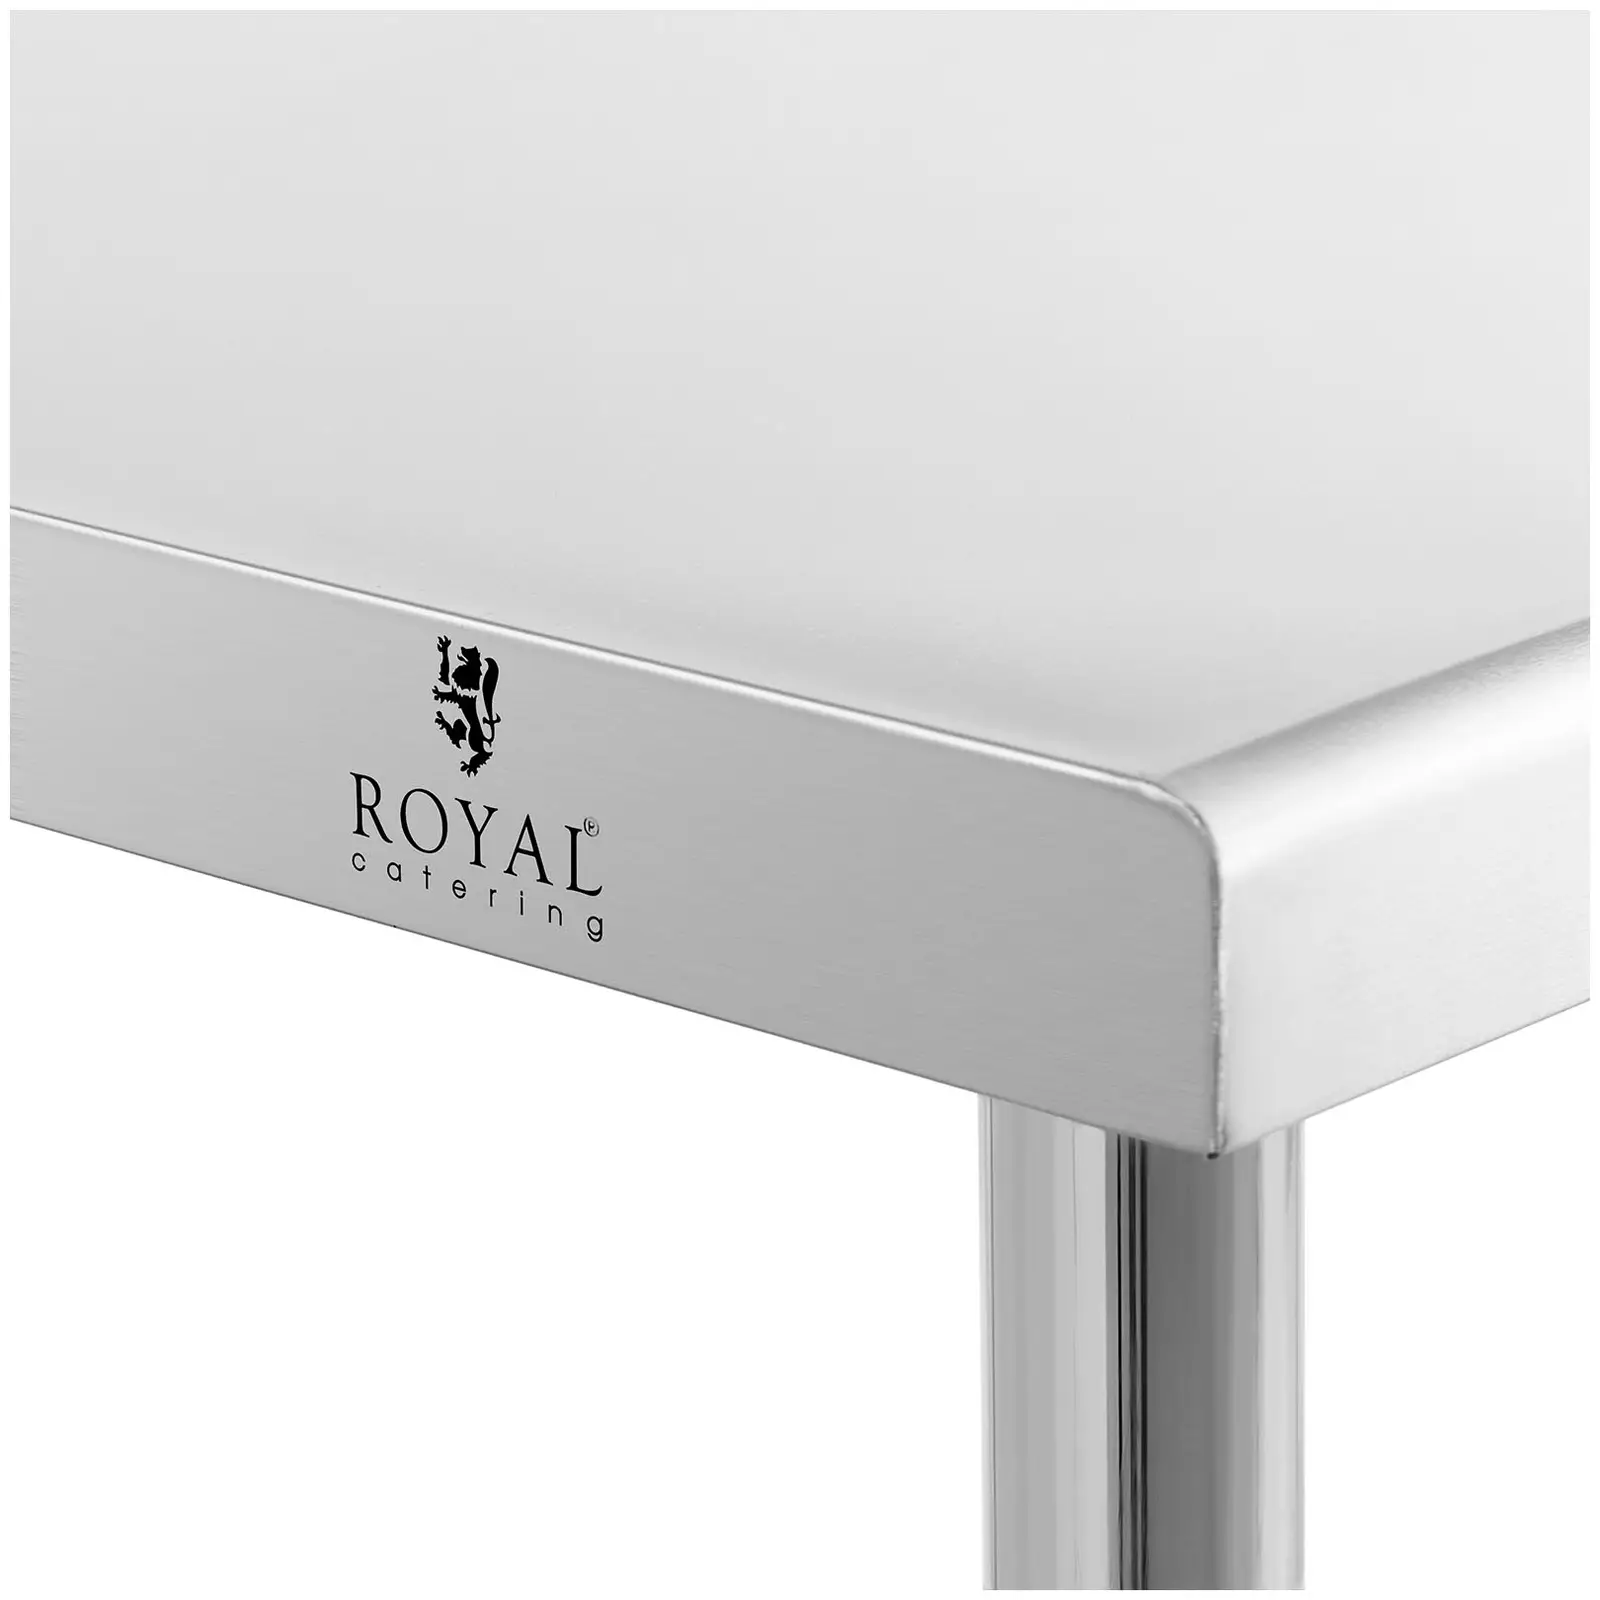 Pracovní stůl z ušlechtilé oceli - 200 x 60 cm - nosnost 95 kg - Royal Catering